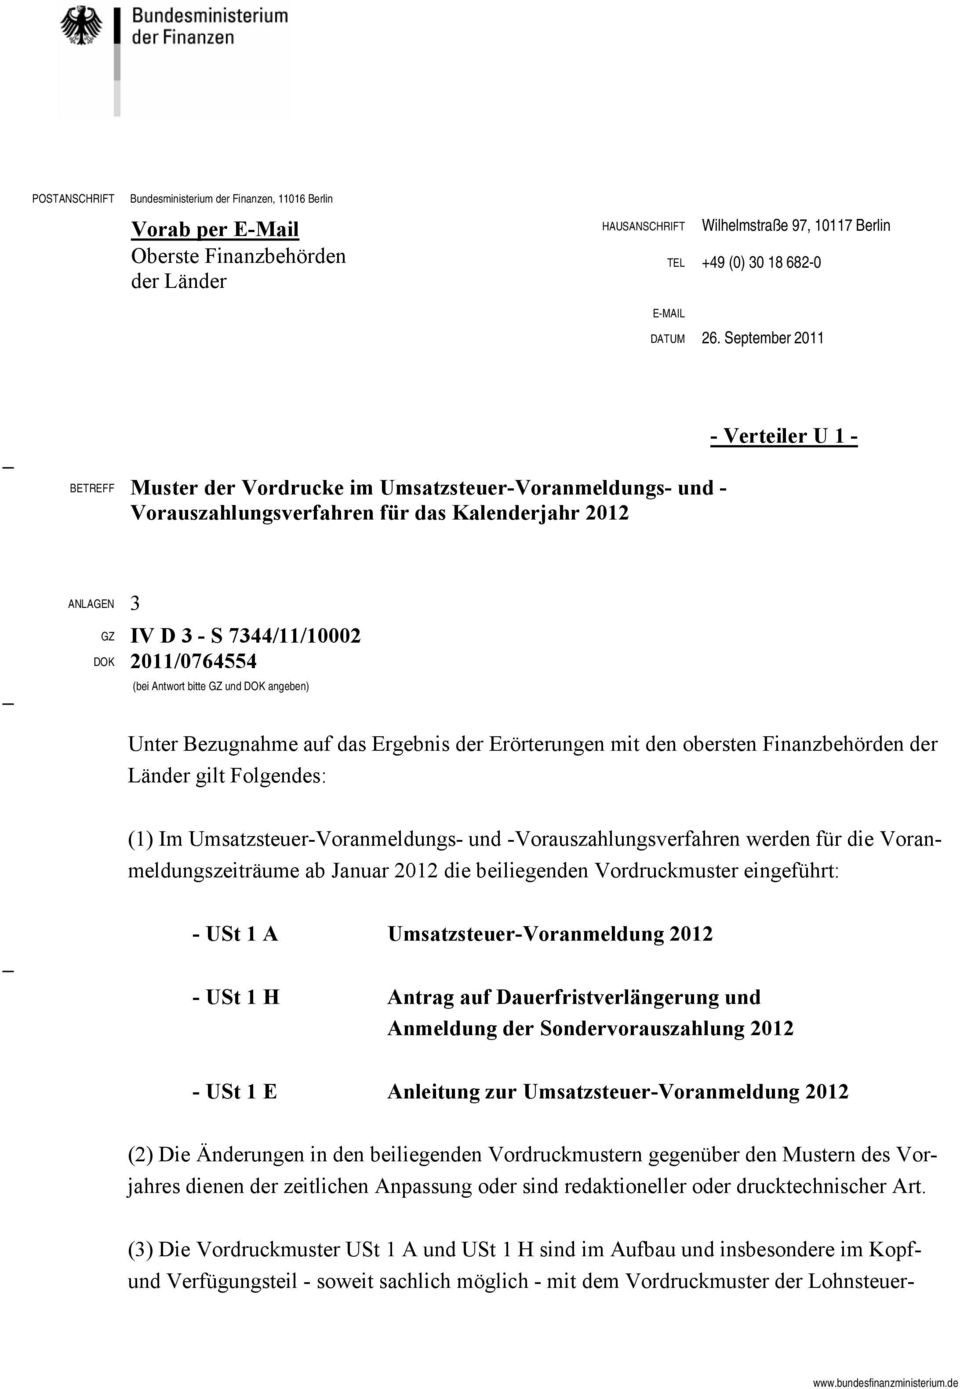 September 20 BETREFF Muster der Vordrucke im Umsatzsteuer-Voranmeldungs- und - Vorauszahlungsverfahren für das Kalenderjahr 2012 - Verteiler U 1 ANLAGEN 3 GZ DOK IV D 3 - S 7344//10002 20/0764554